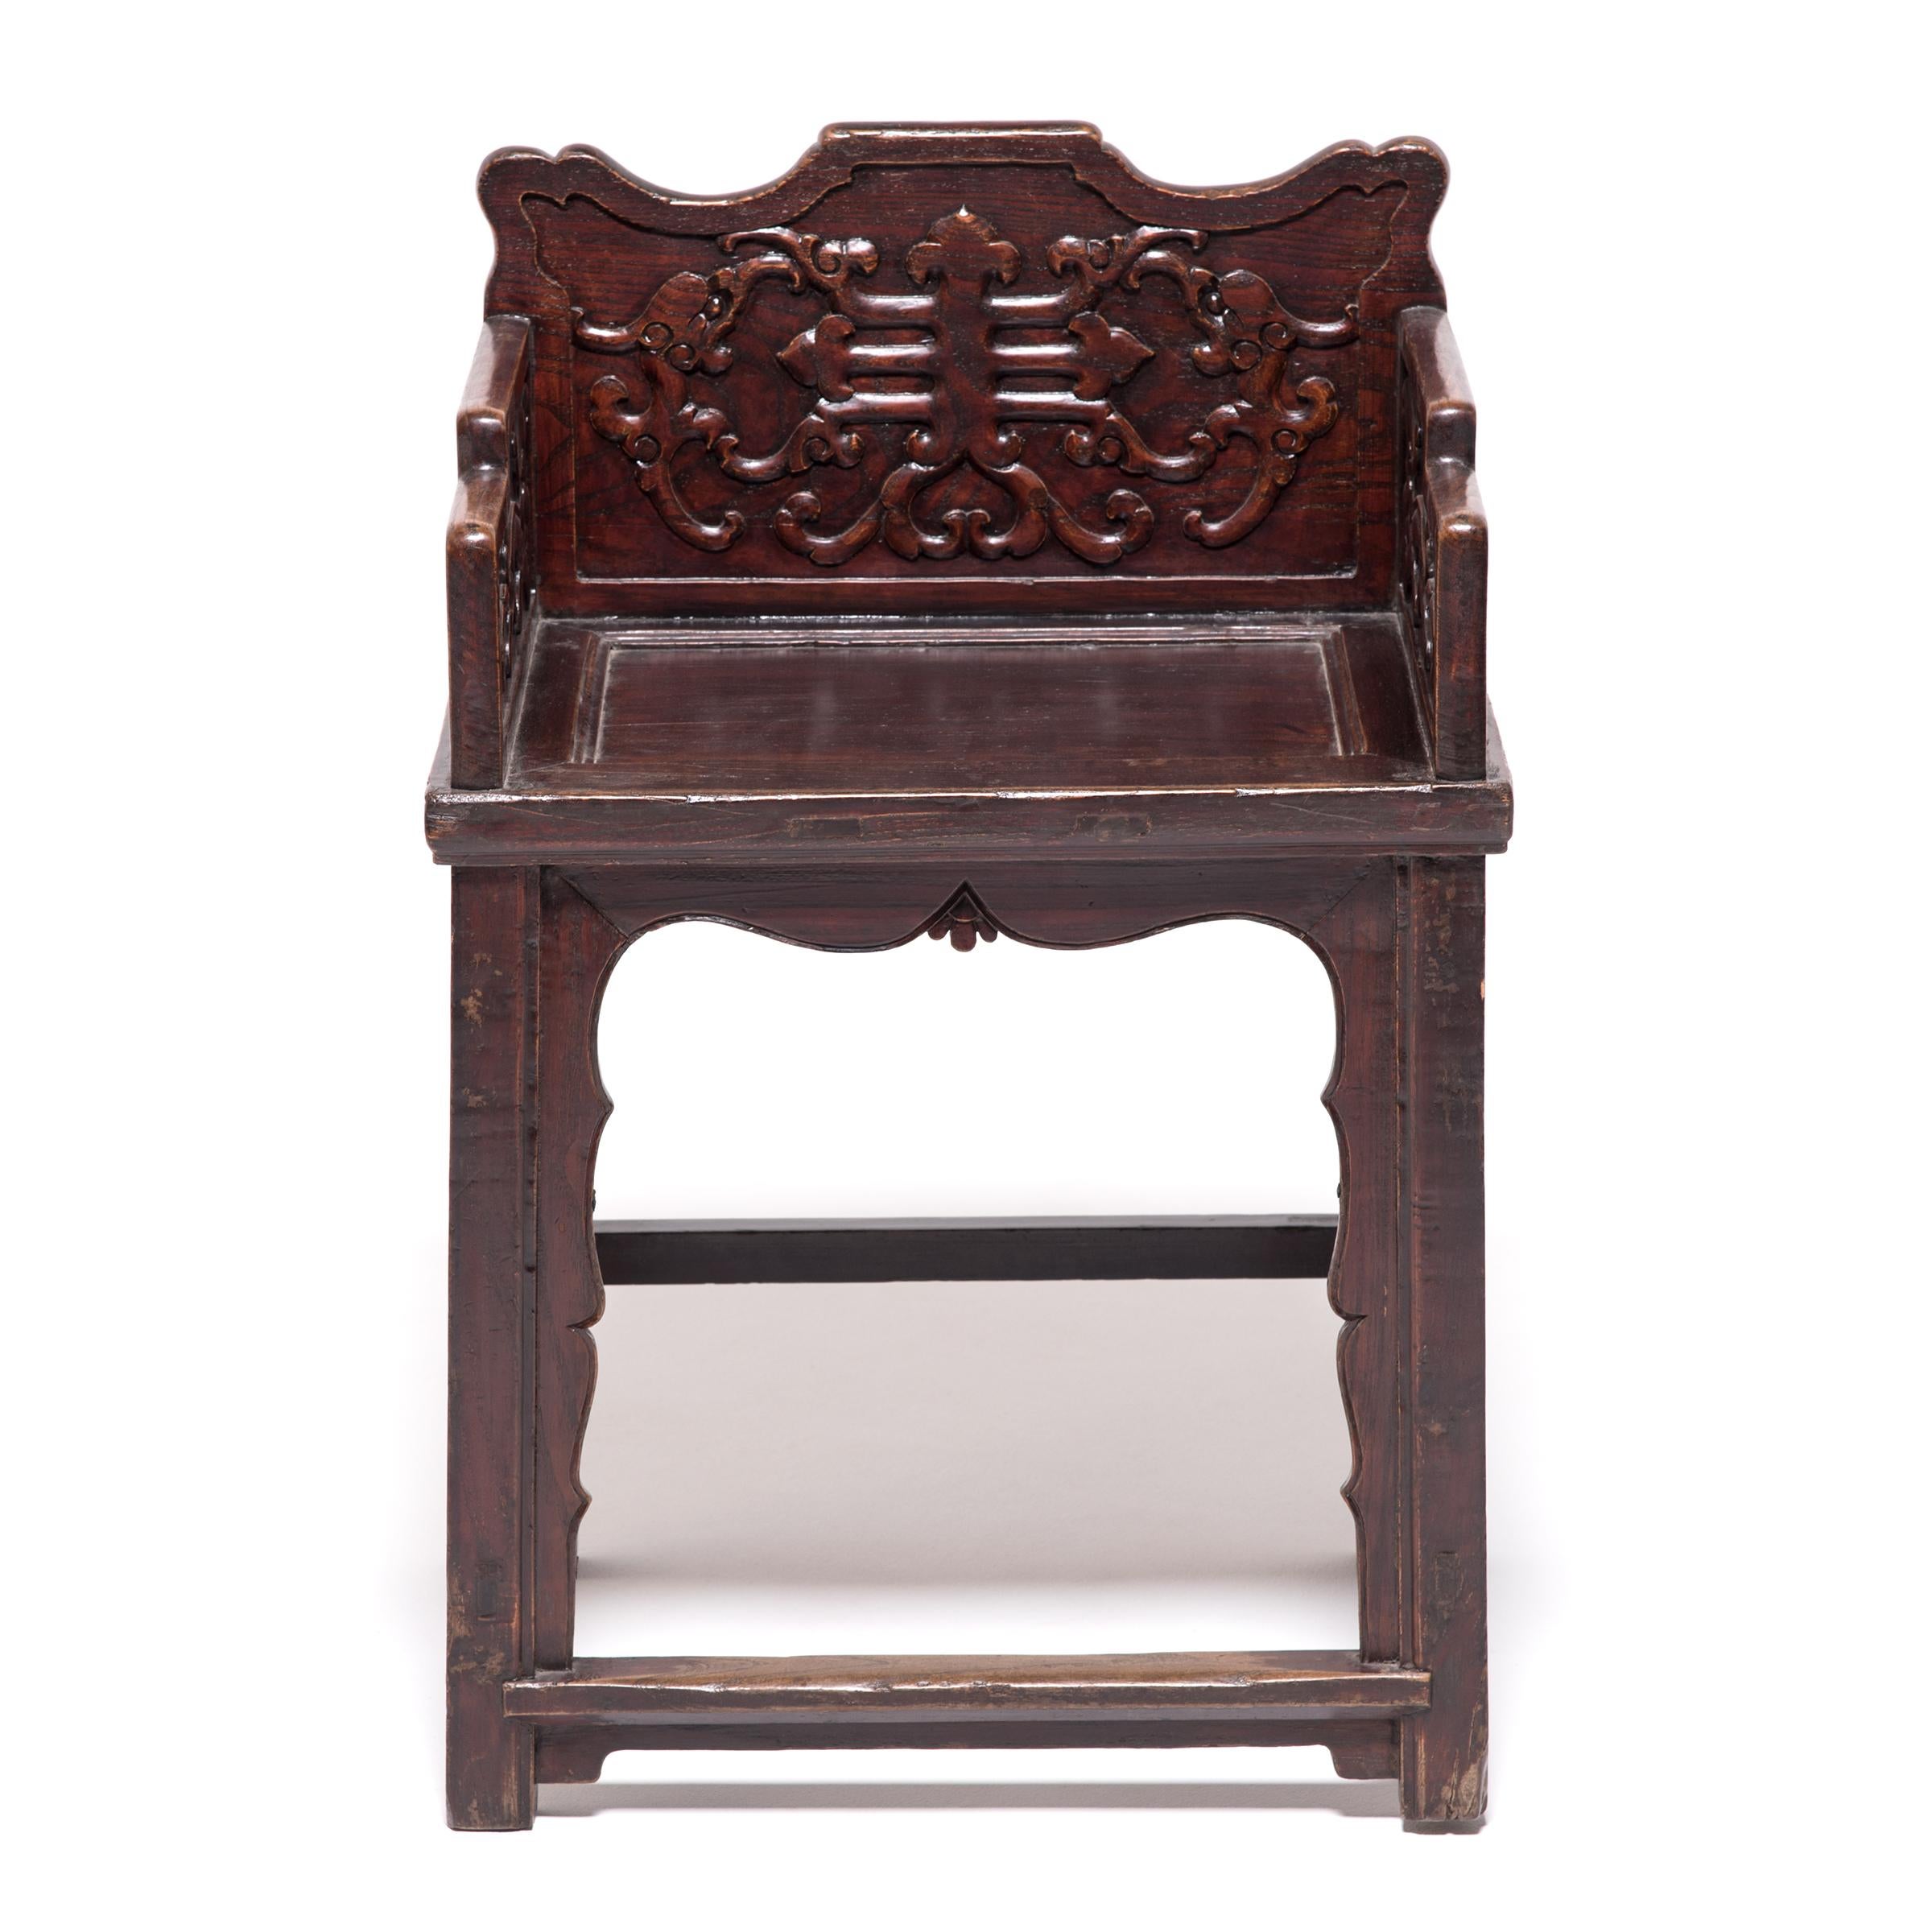 Diese exquisit geschnitzten Sessel mit niedriger Rückenlehne sind in ihrer Silhouette und ihrem Dekor einzigartig. Die Stühle sind im Taishiyi-Stil konstruiert, einem alten Design für kaiserliche Paläste, und spielen mit der Tradition, indem sie